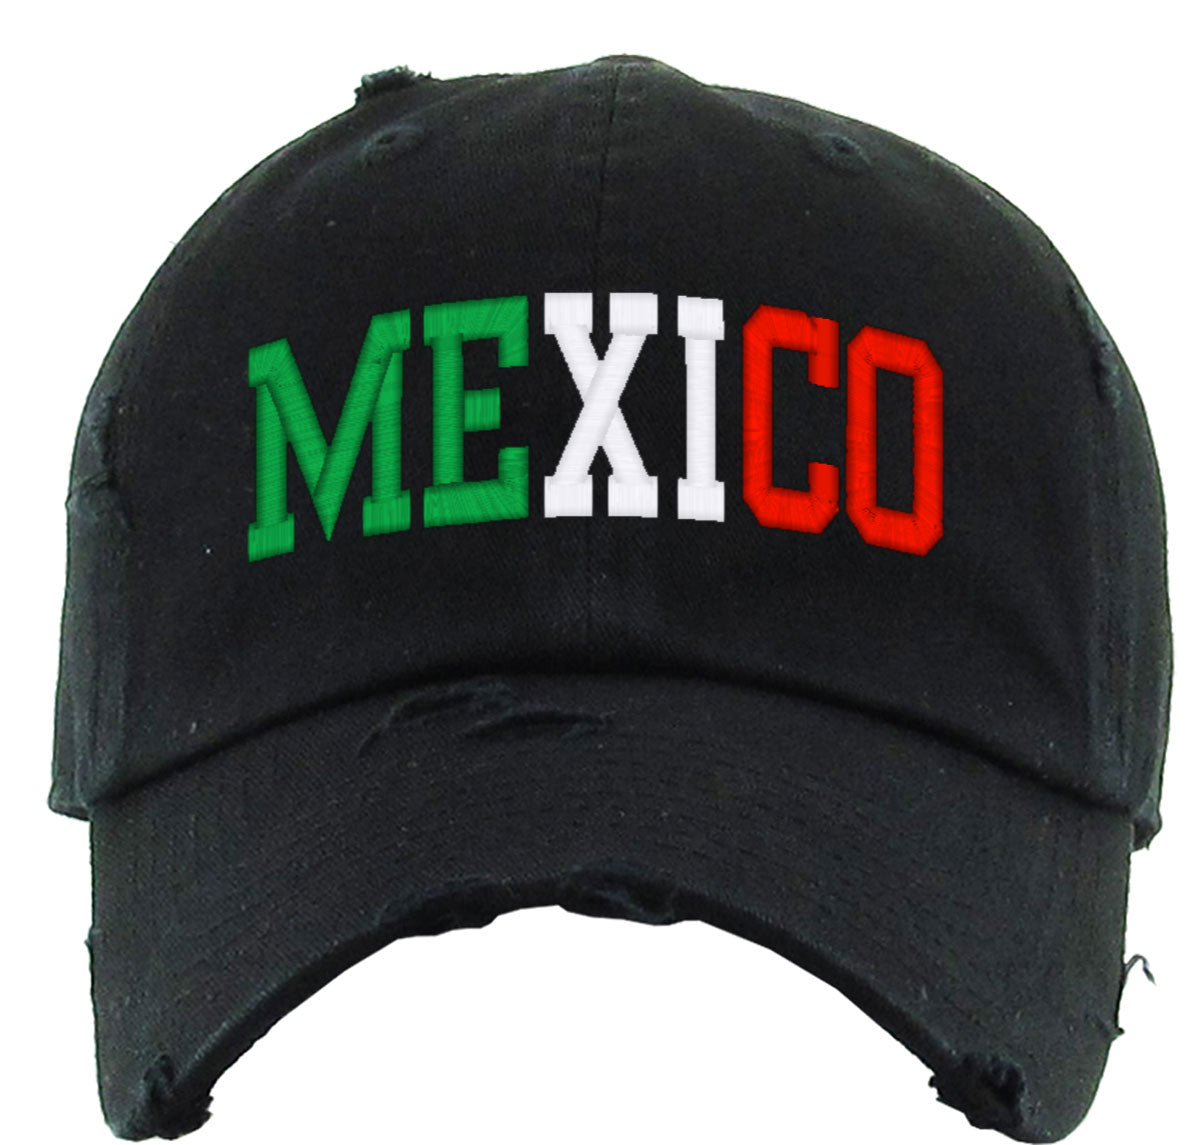 Mexico Vintage Baseball Cap